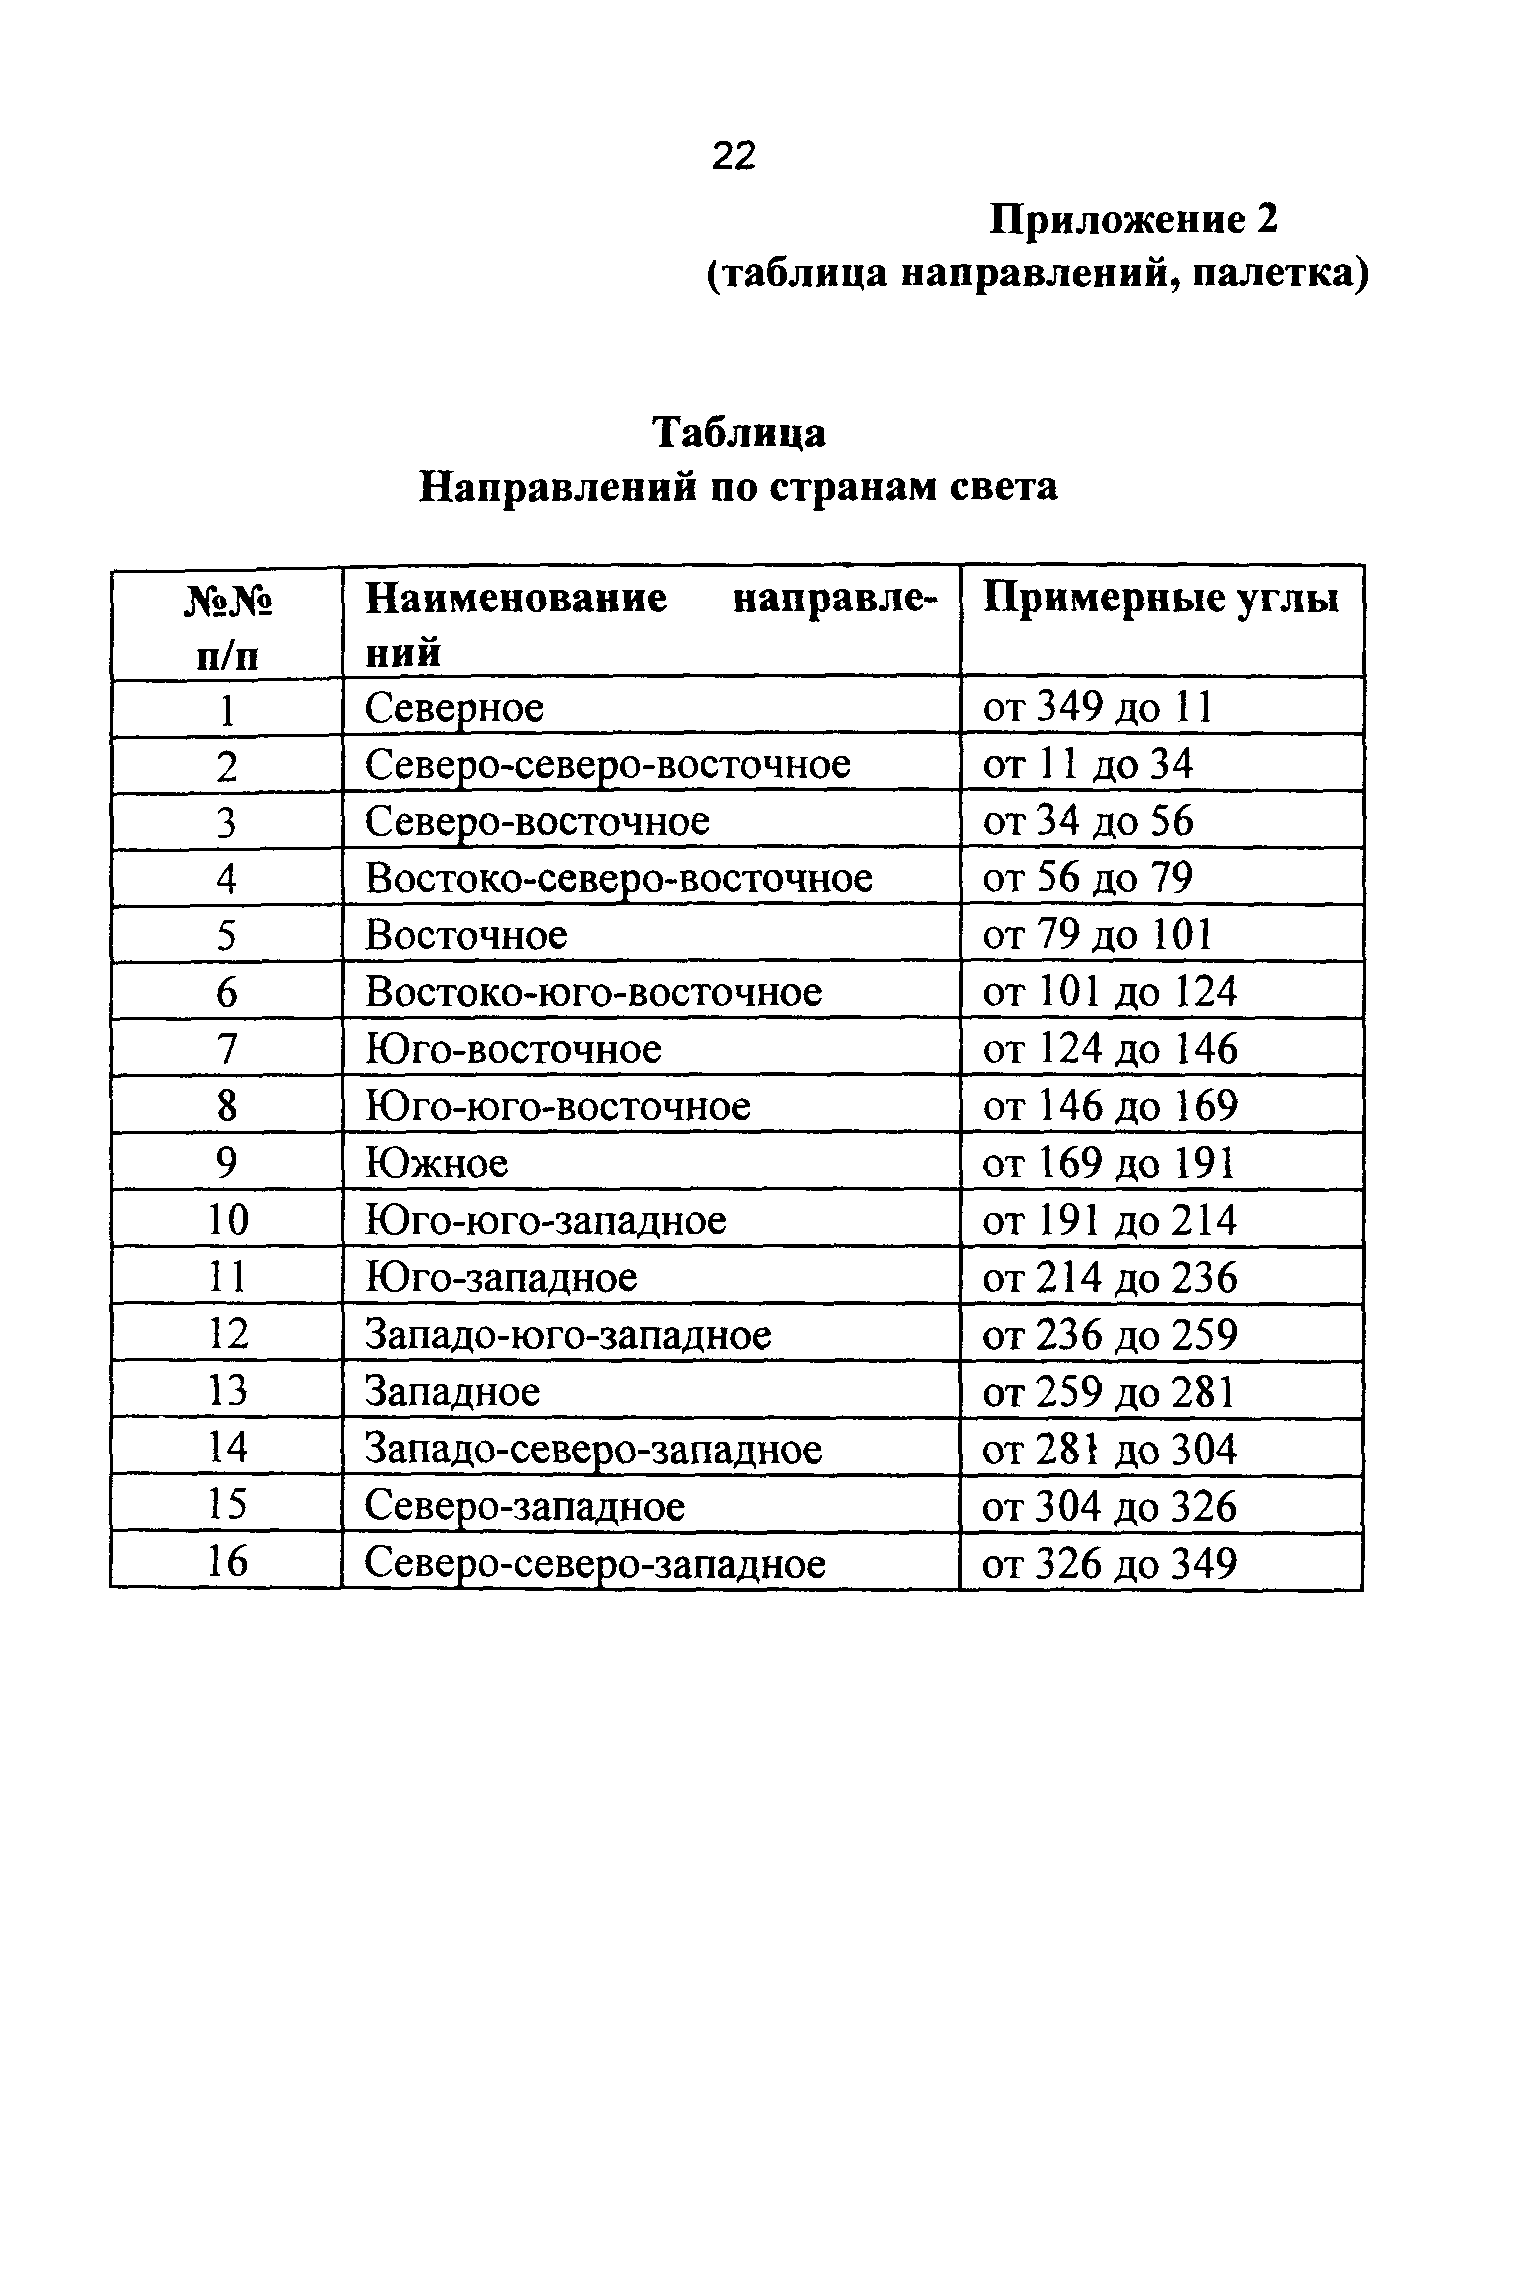 ГКИНП 05-255-01